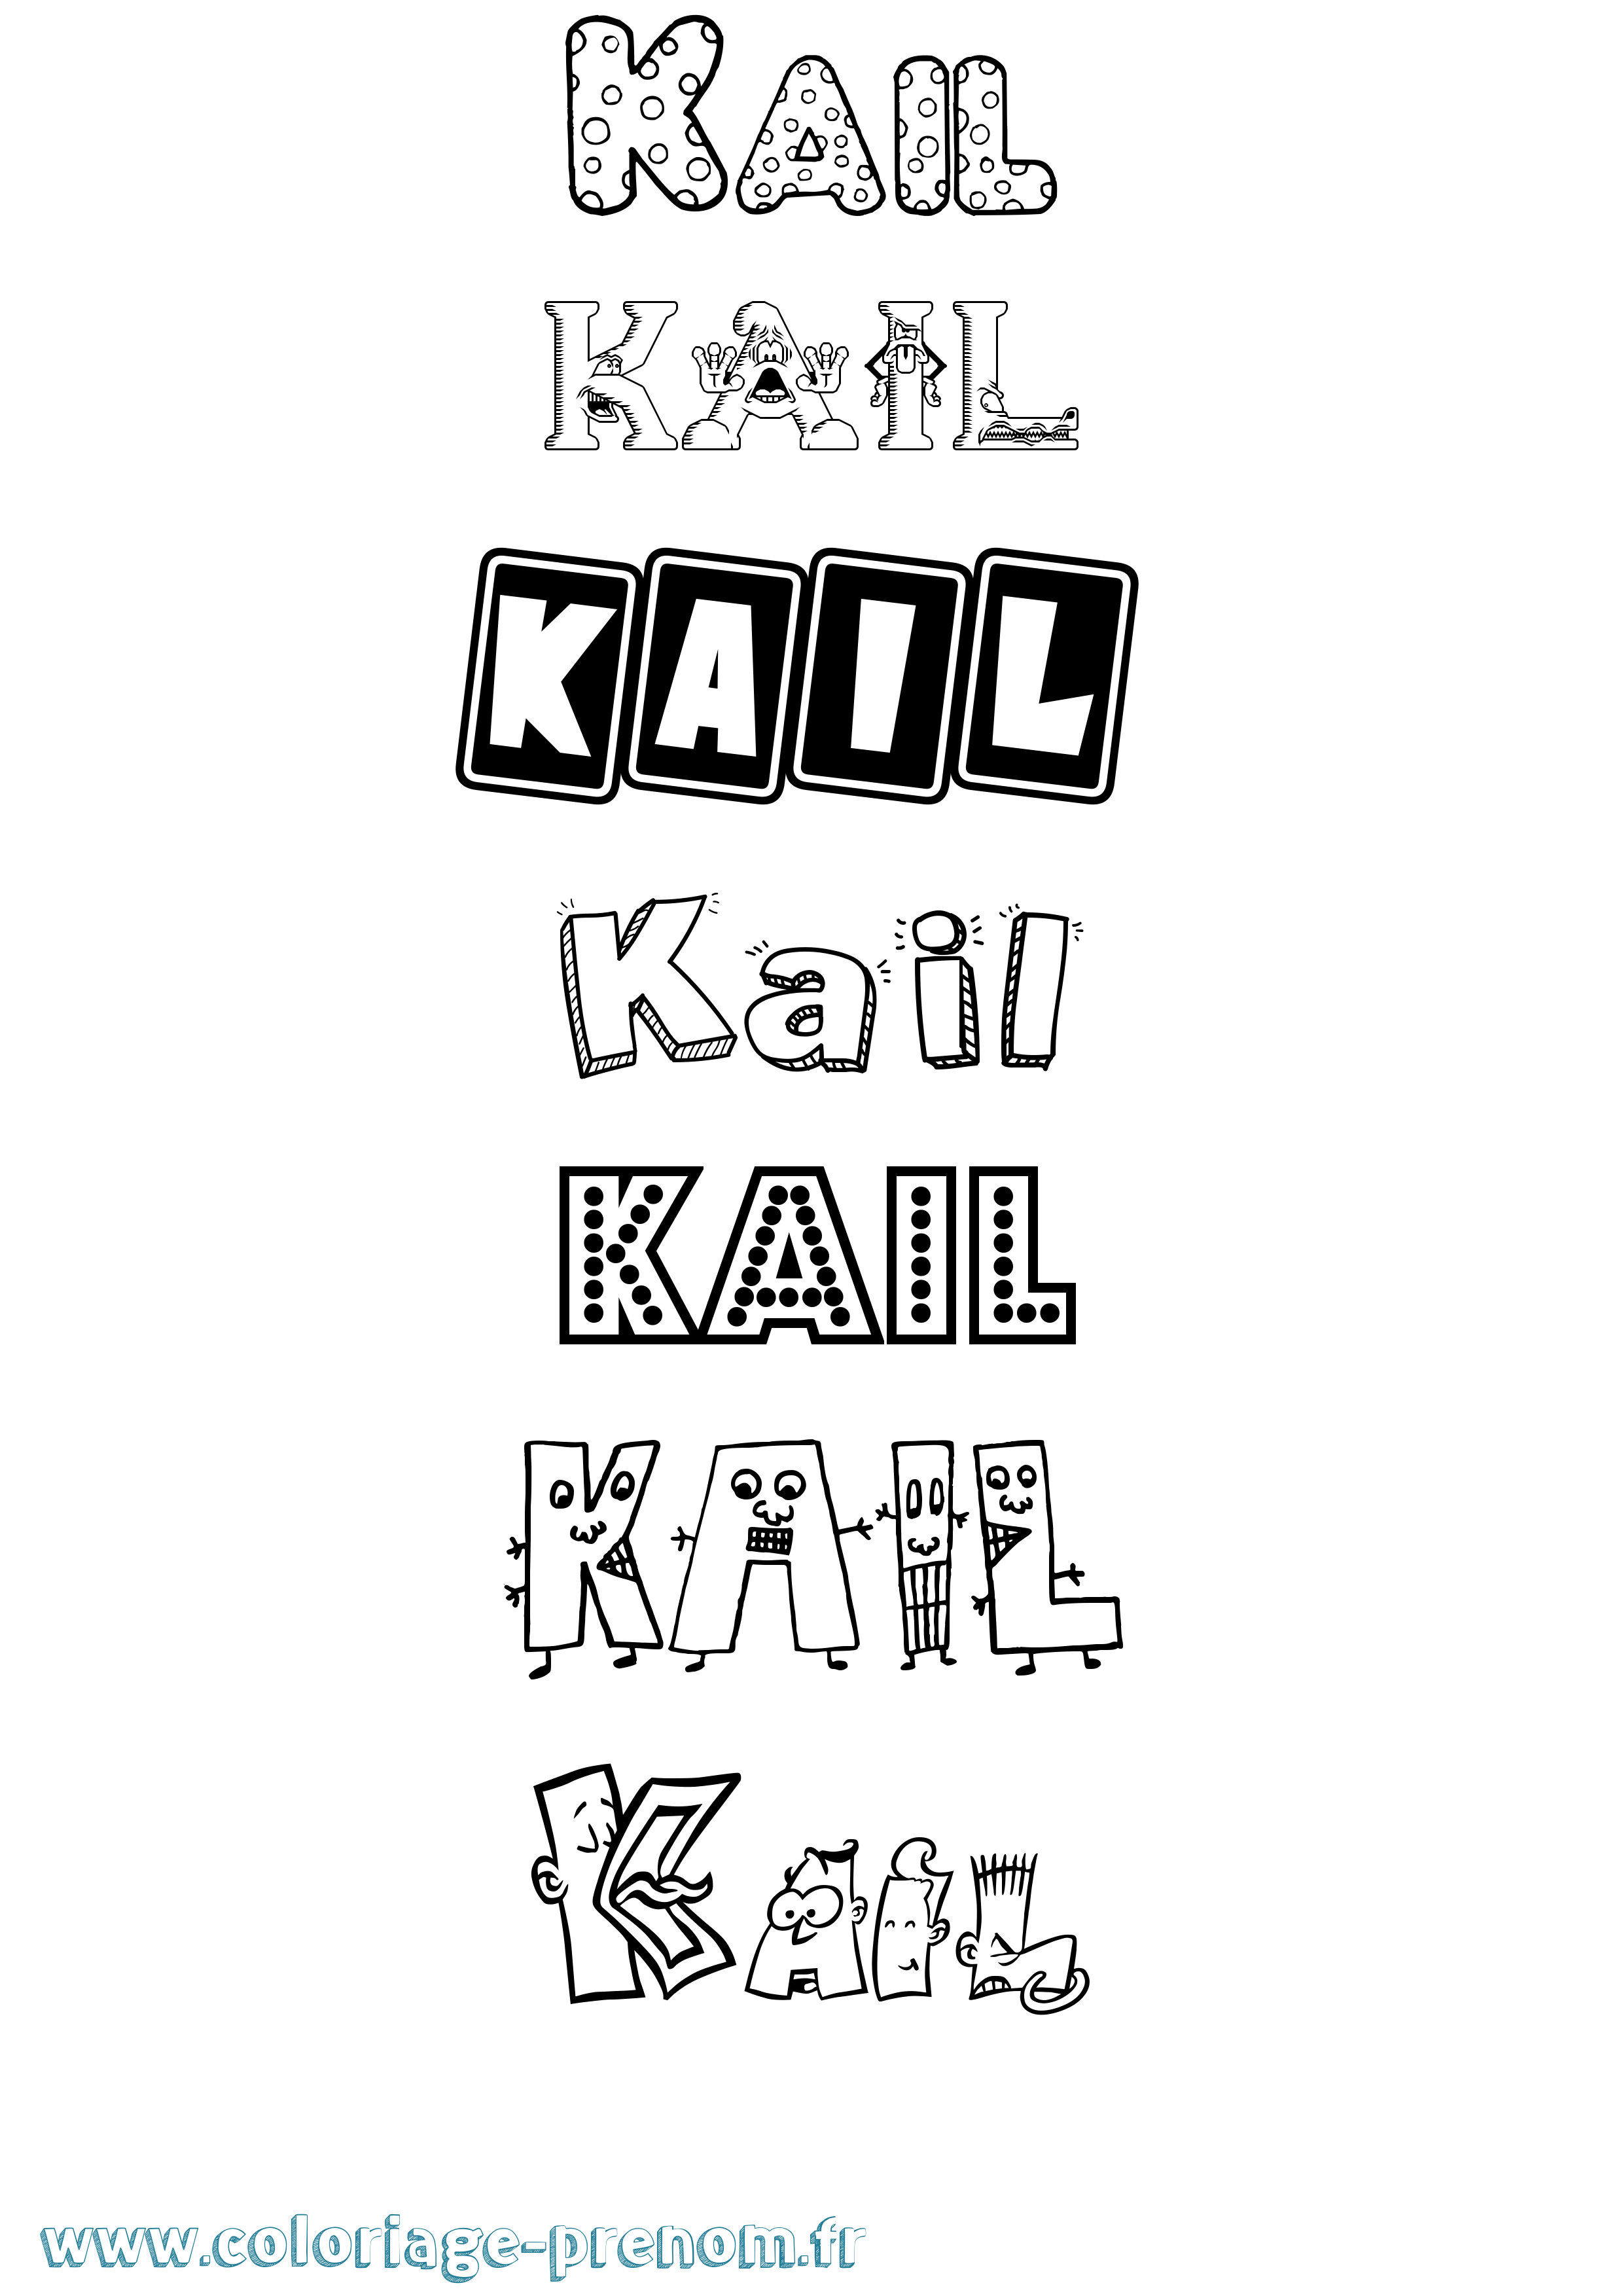 Coloriage prénom Kail Fun